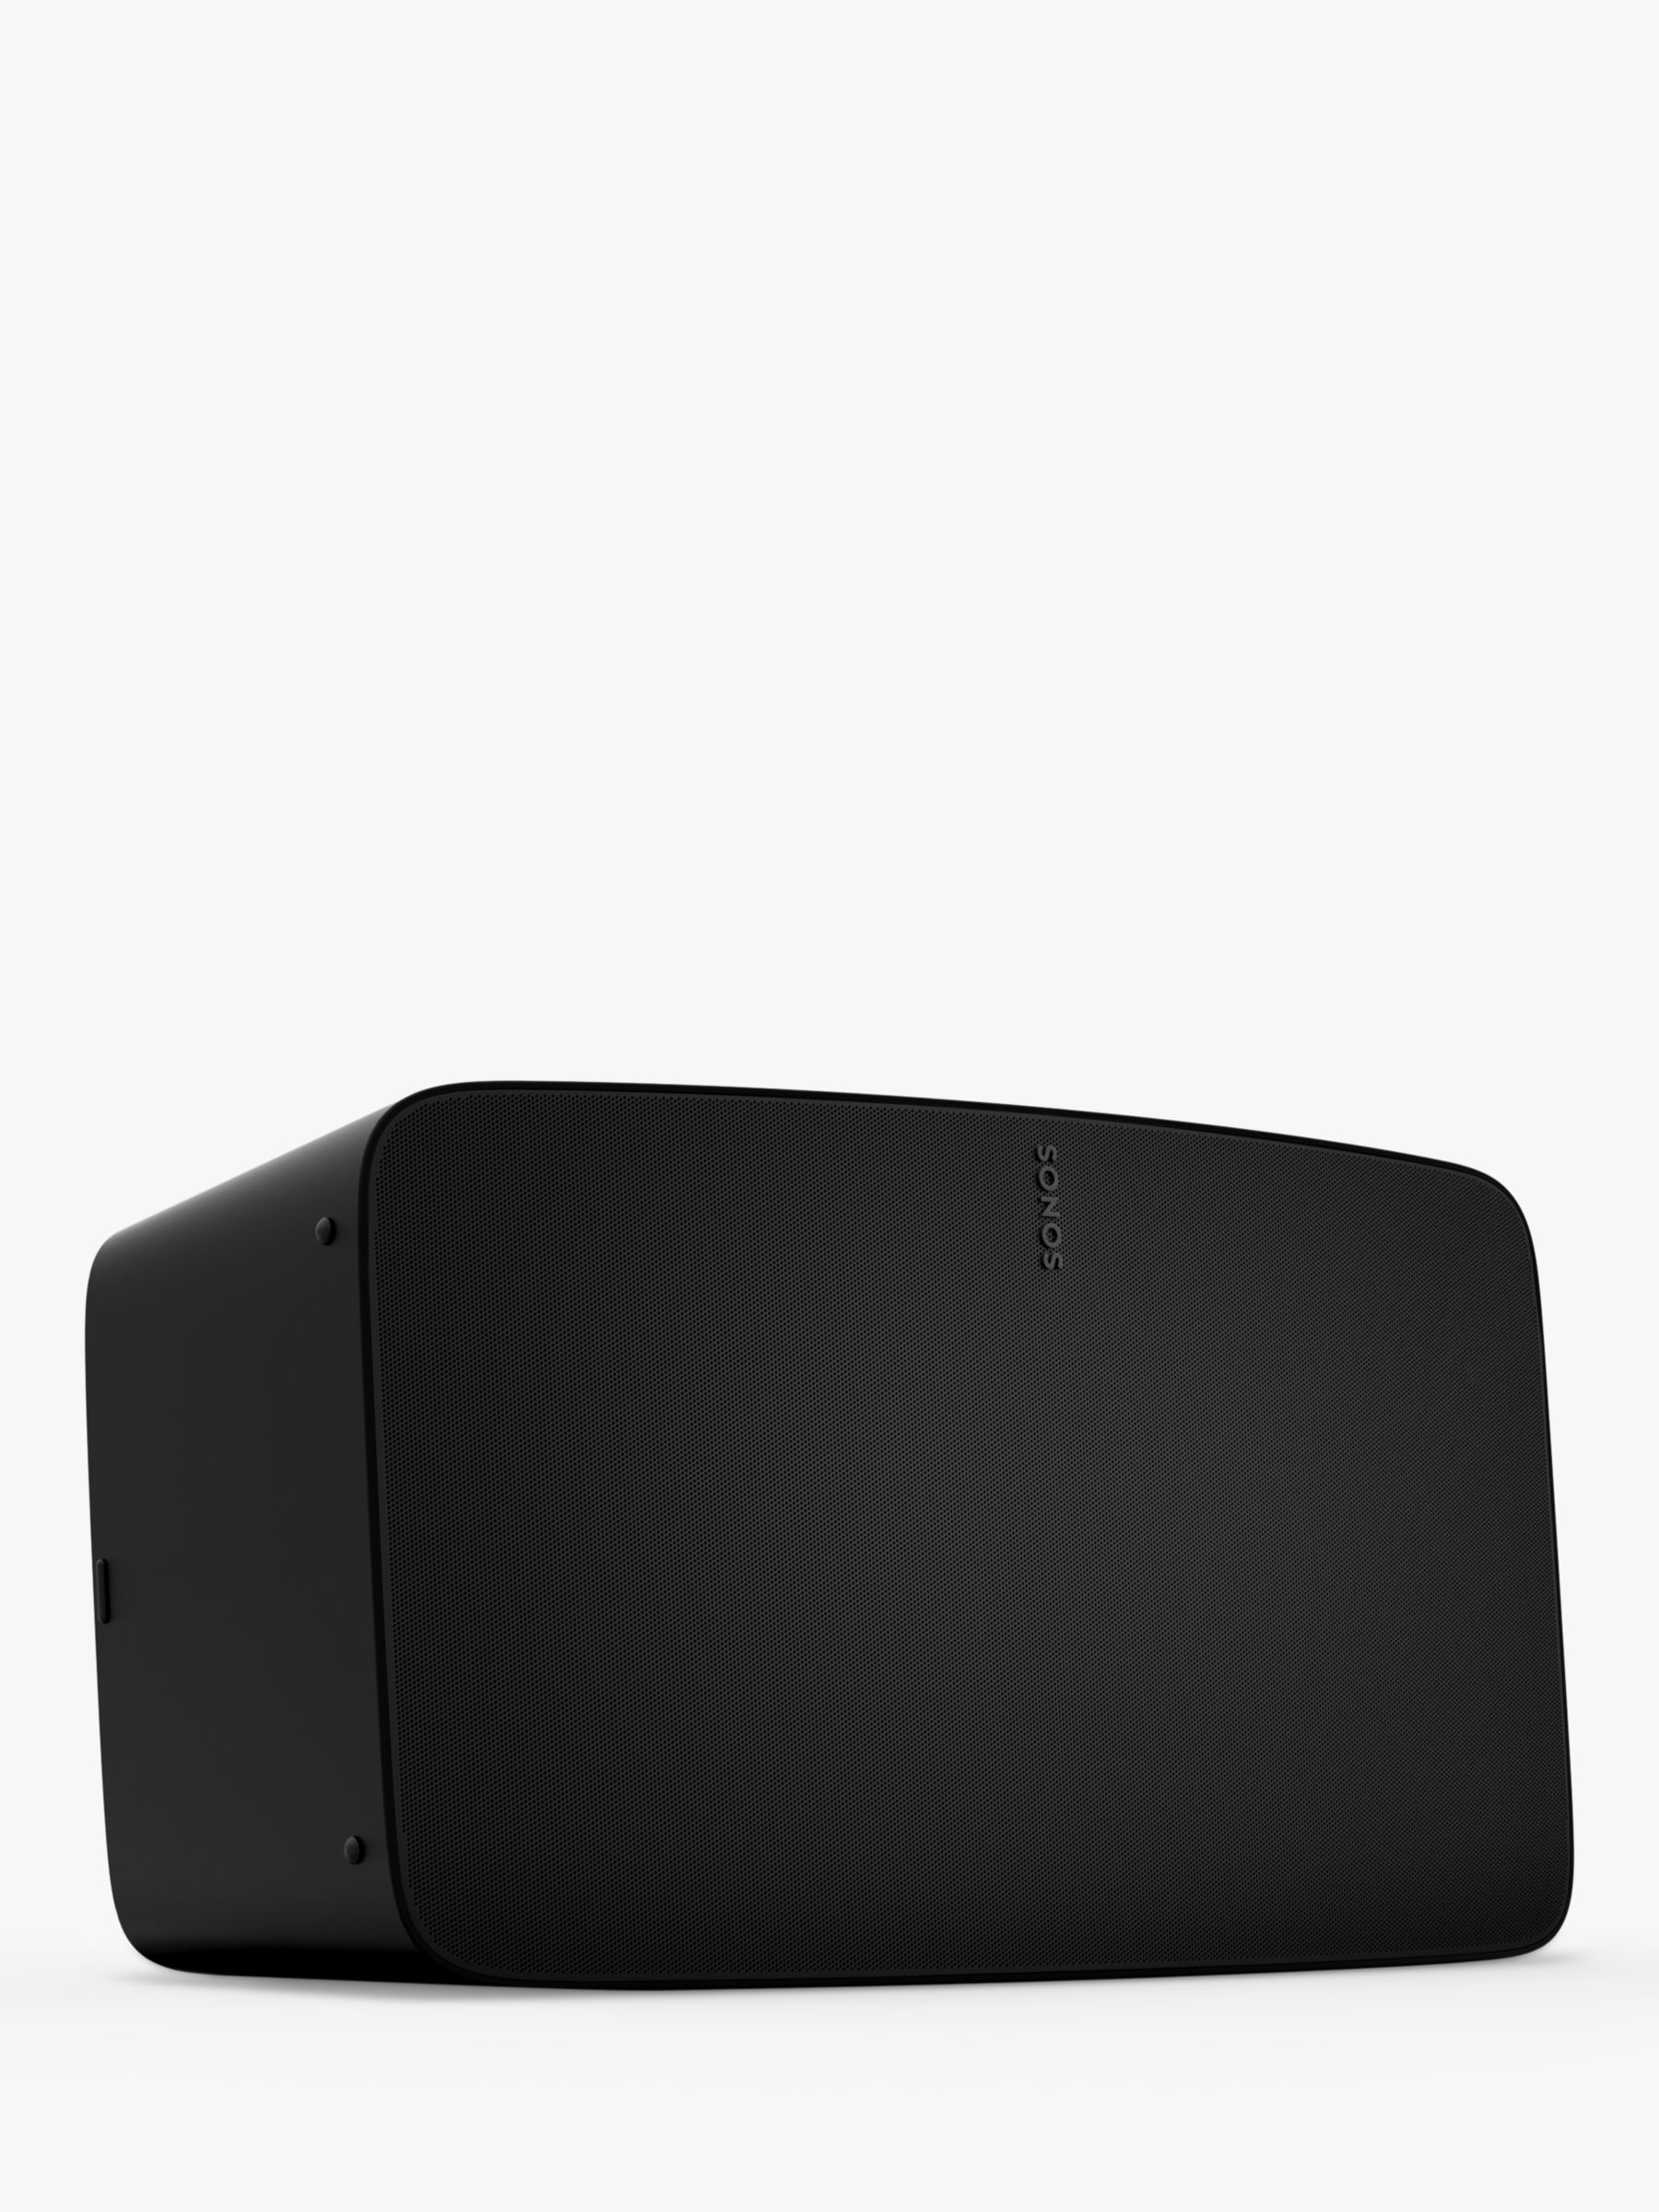 meddelelse svar Forbedre Sonos Five Smart Speaker, Black